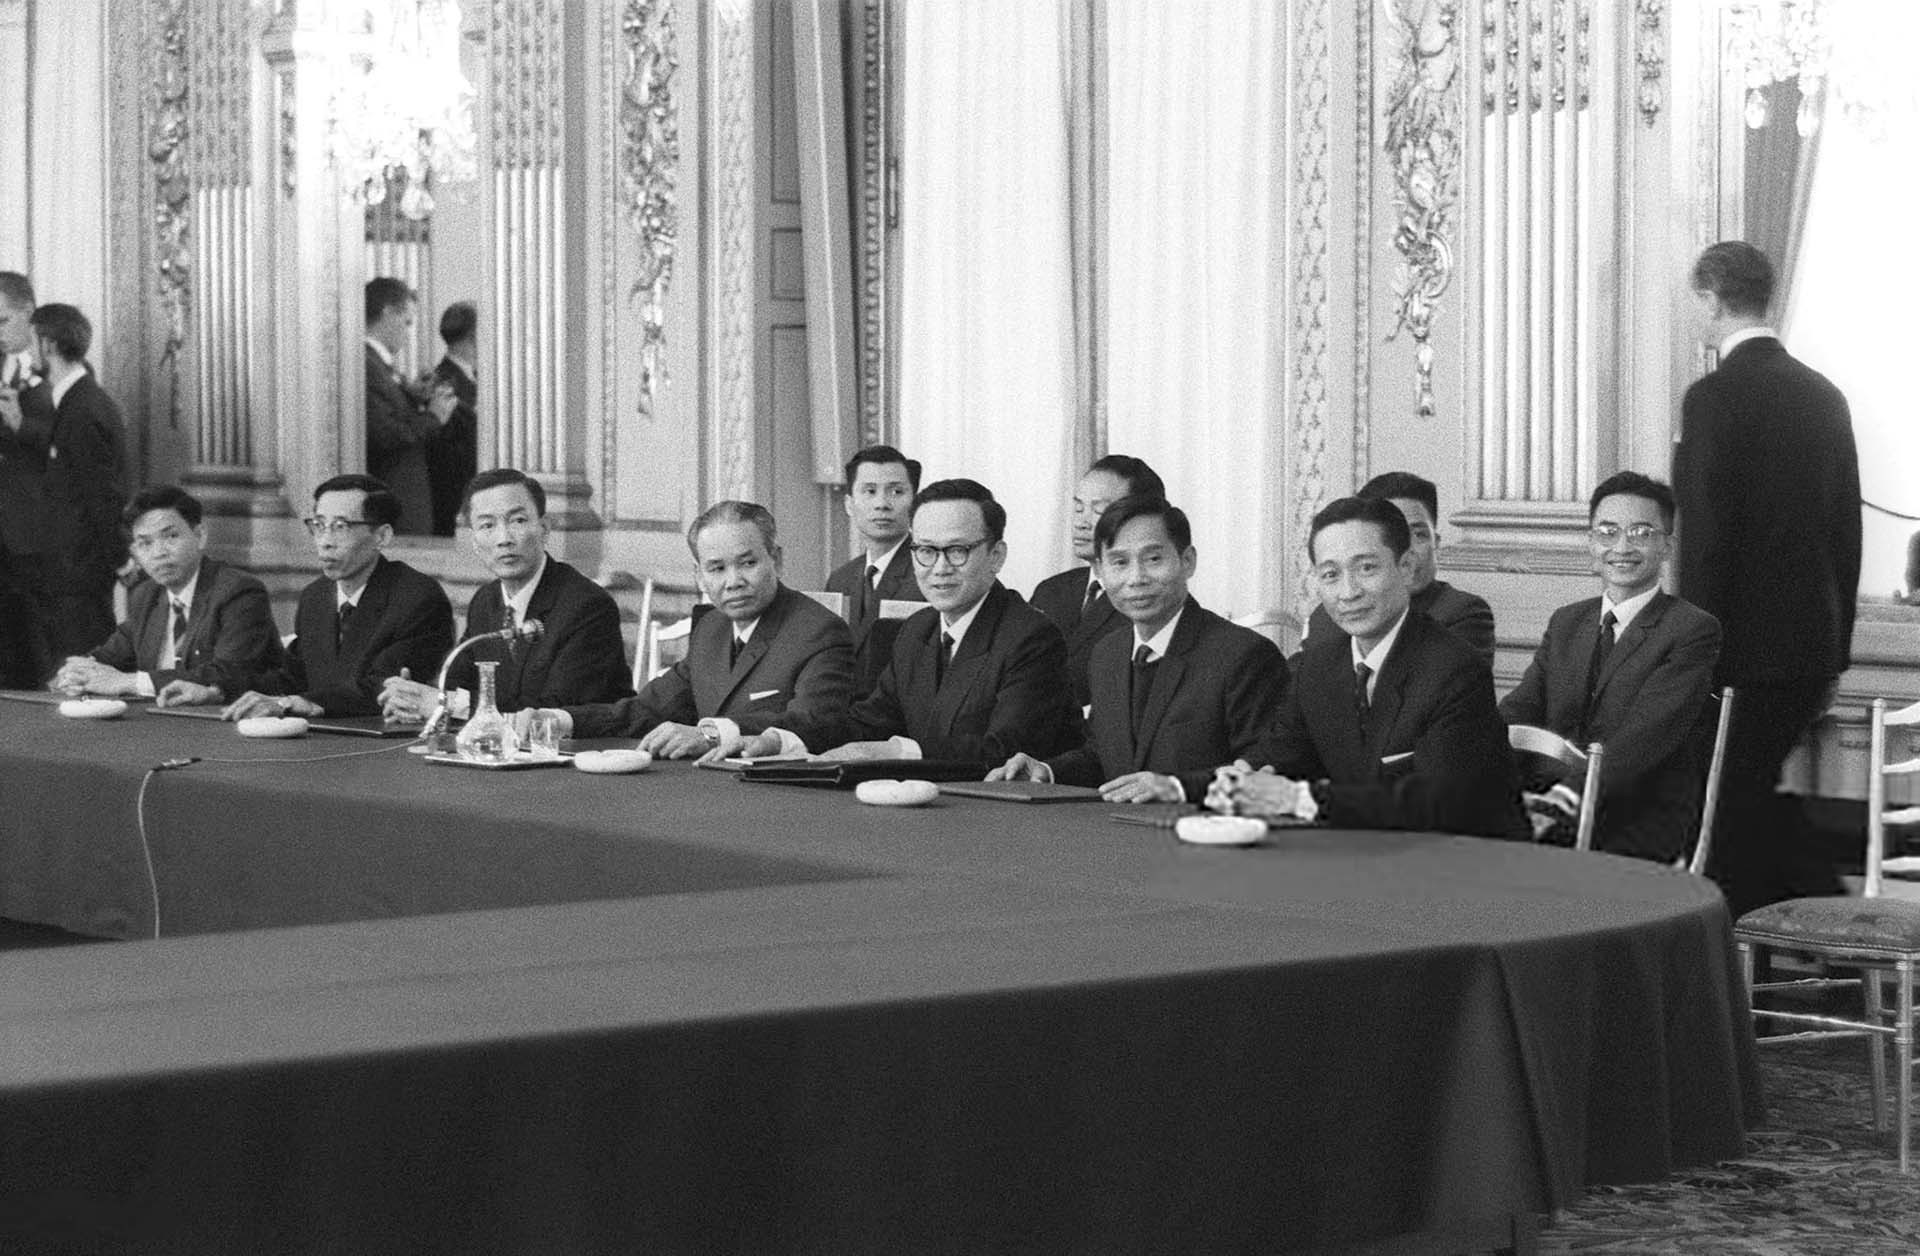 Đoàn đàm phán của VNDCCH tại phiên khai mạc hội nghị Paris, ngày 13/05/1968.